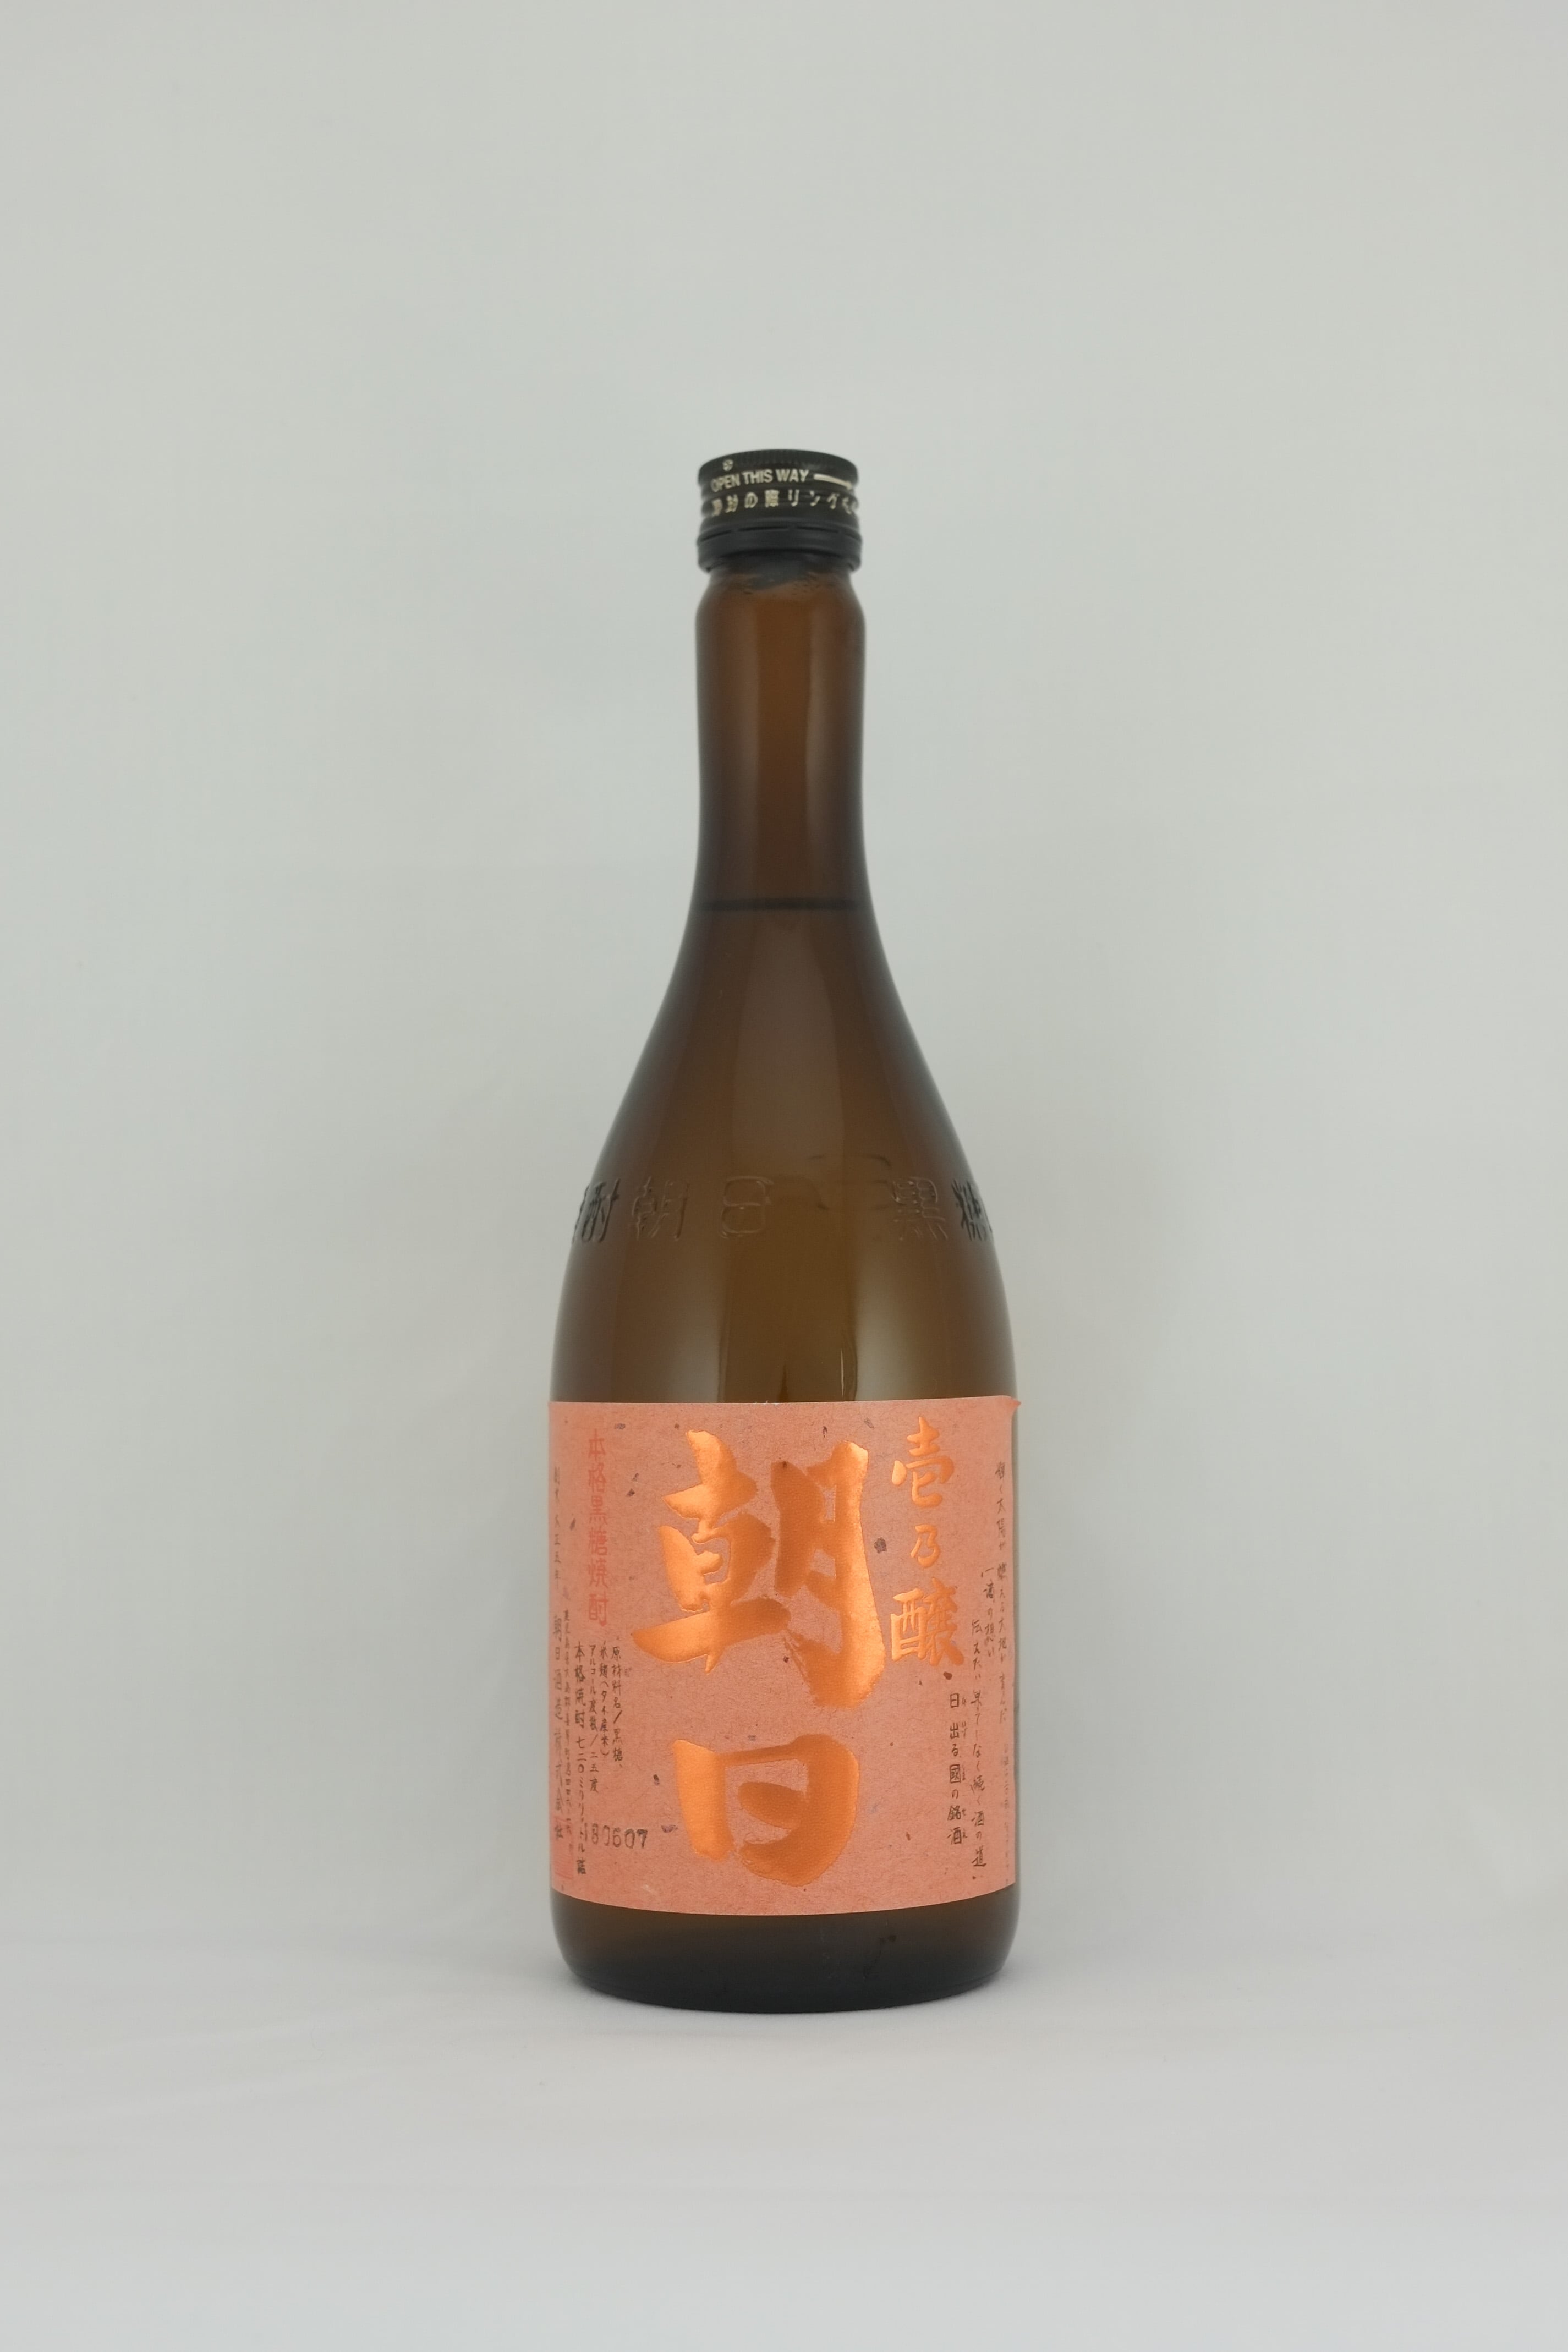 Yoigokochi - Sake importer